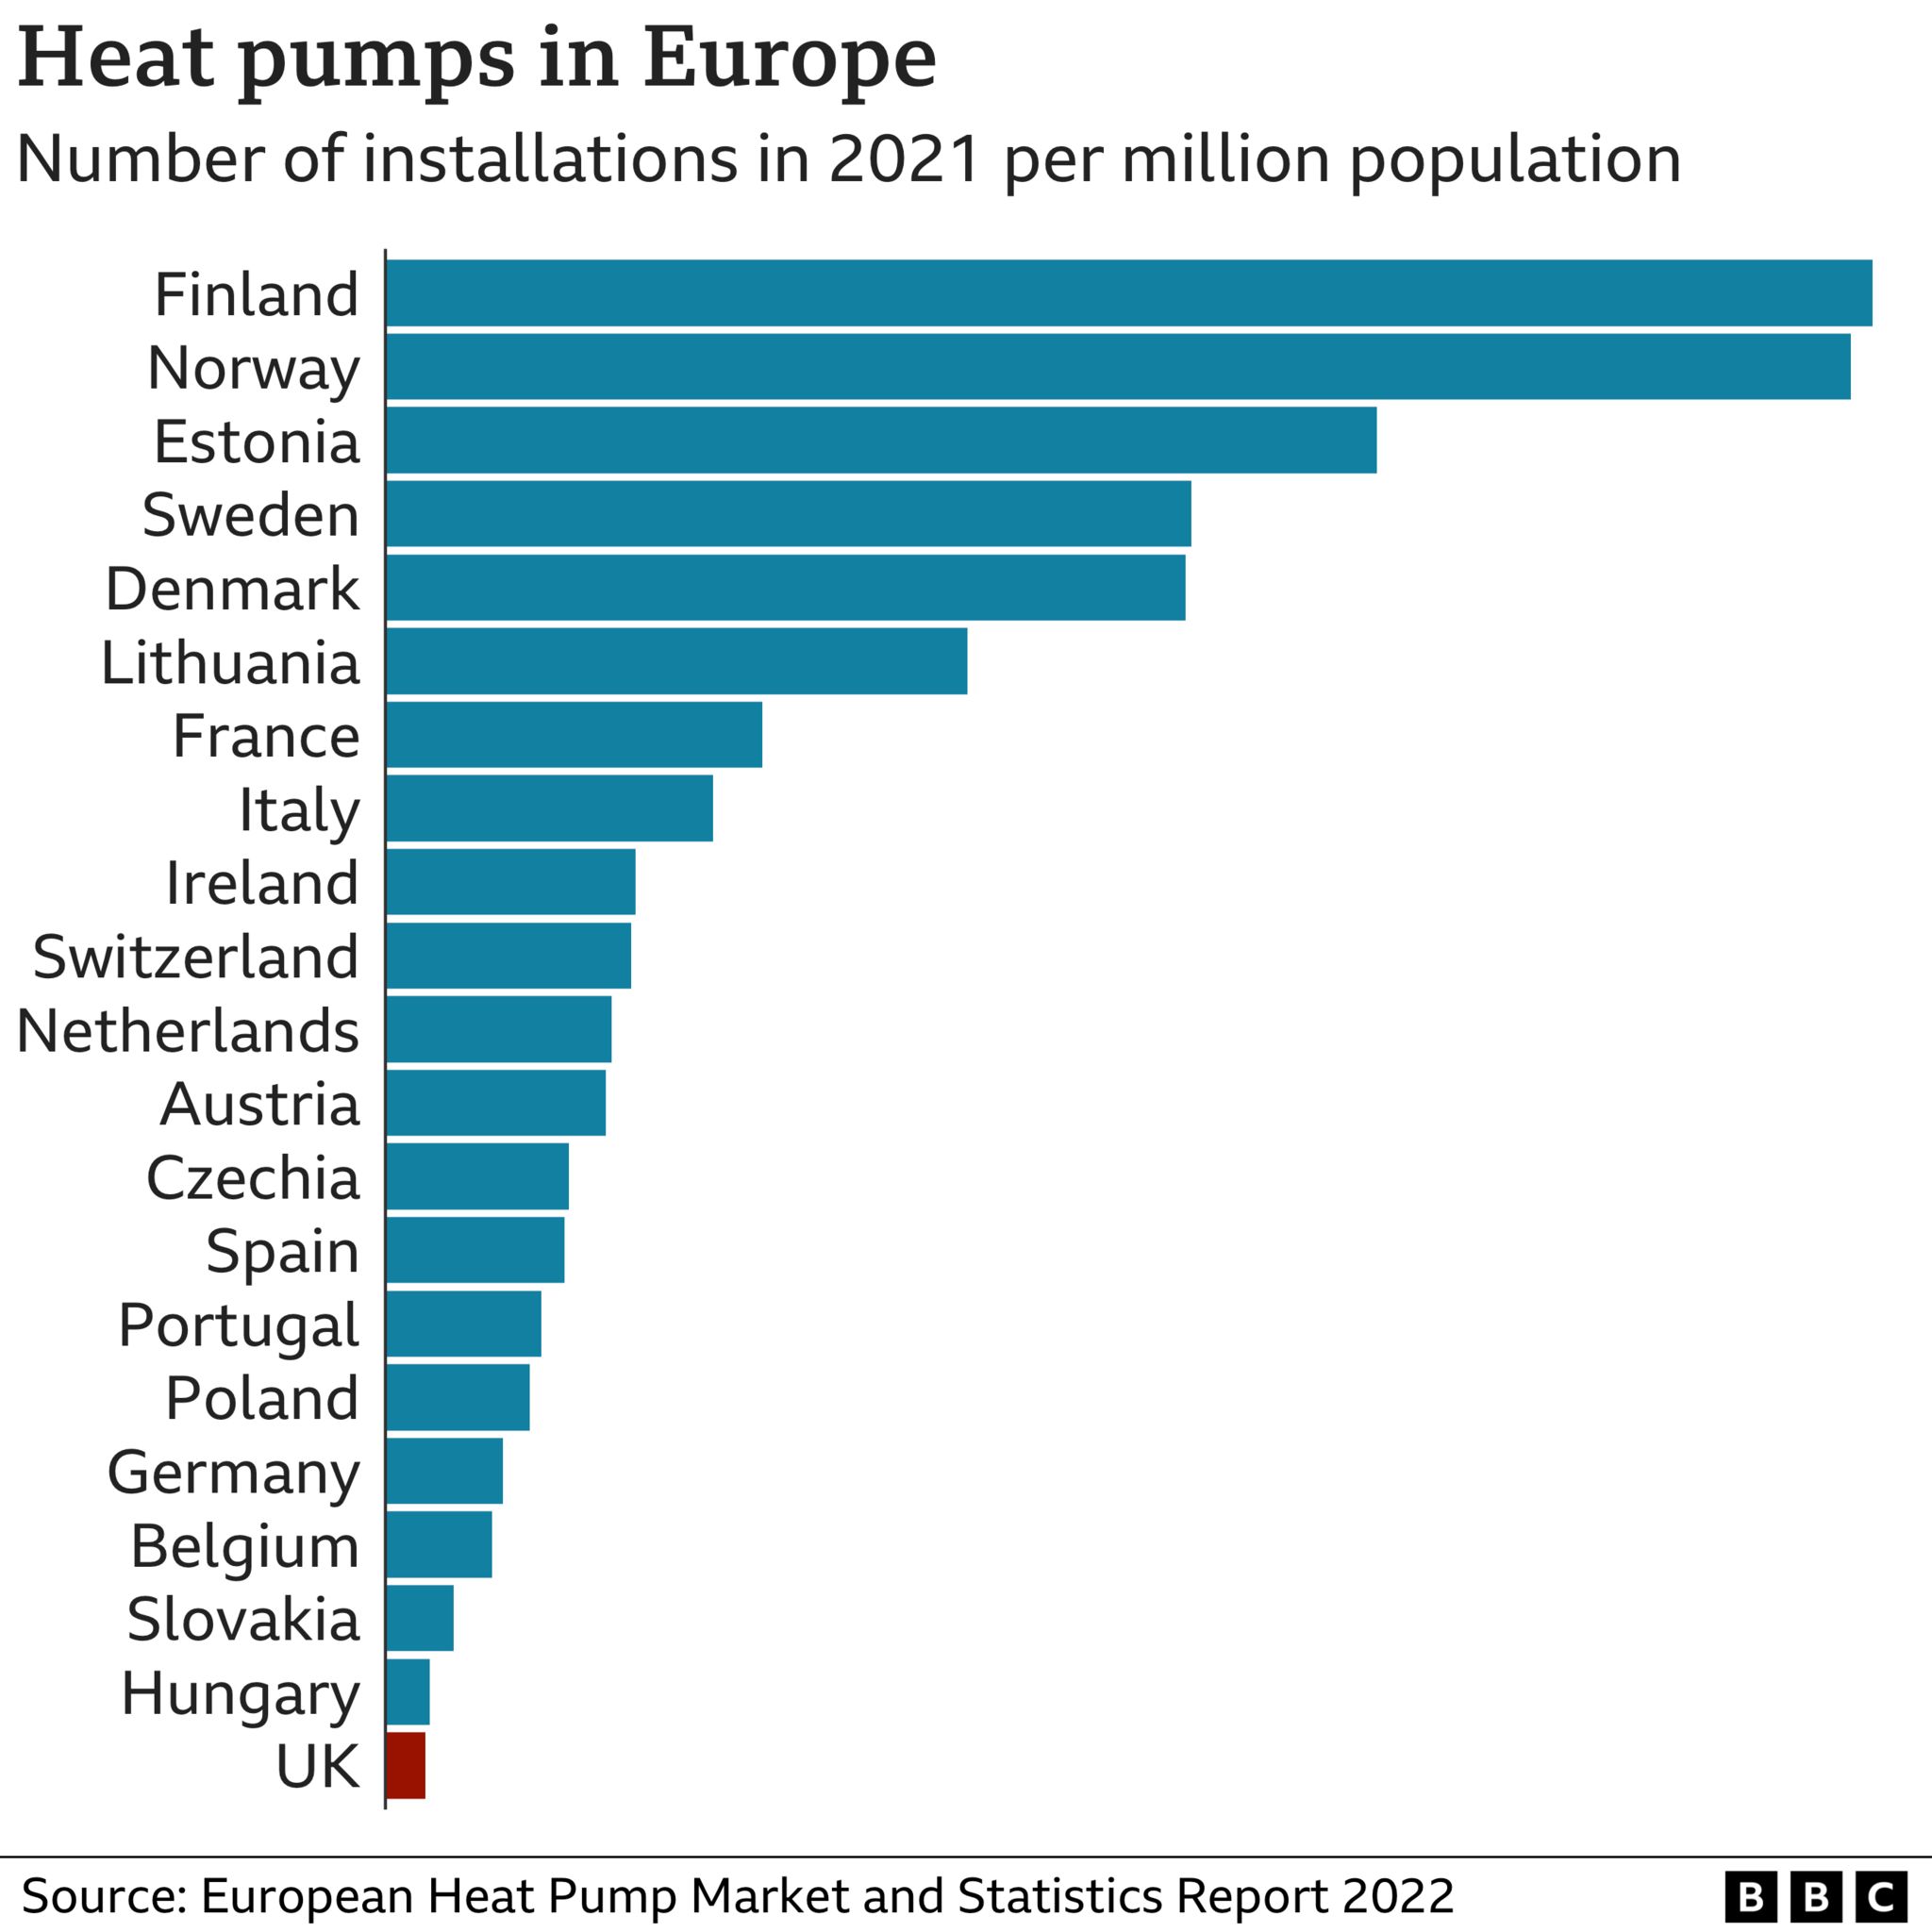 Gráfico que muestra el Reino Unido como el más bajo de los 21 países de Europa por instalaciones de bombas de calor por millón de habitantes